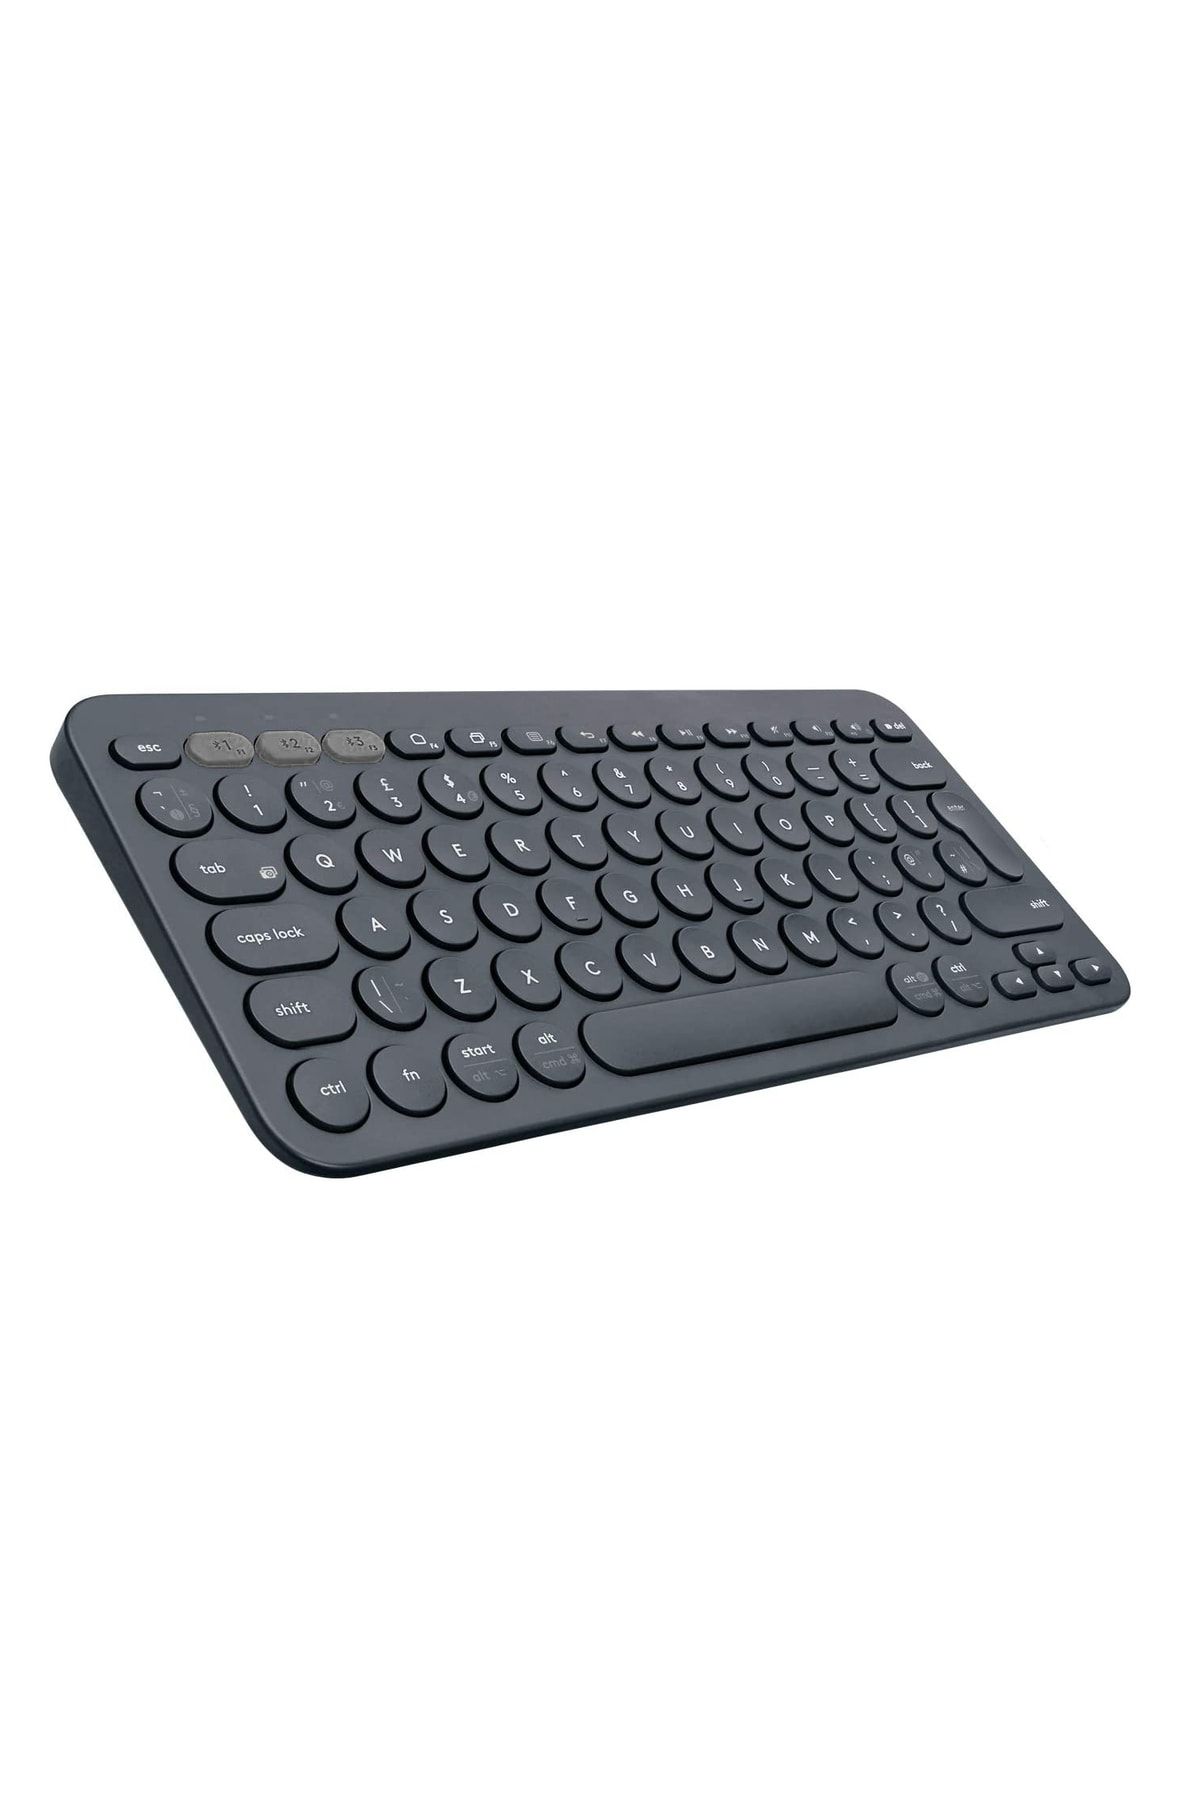 Microcase Al3048 Tablet Telefon Bilgisayar Için Yuvarlak Tuşlu Bluetooth Kablosuz Klavye - Siyah